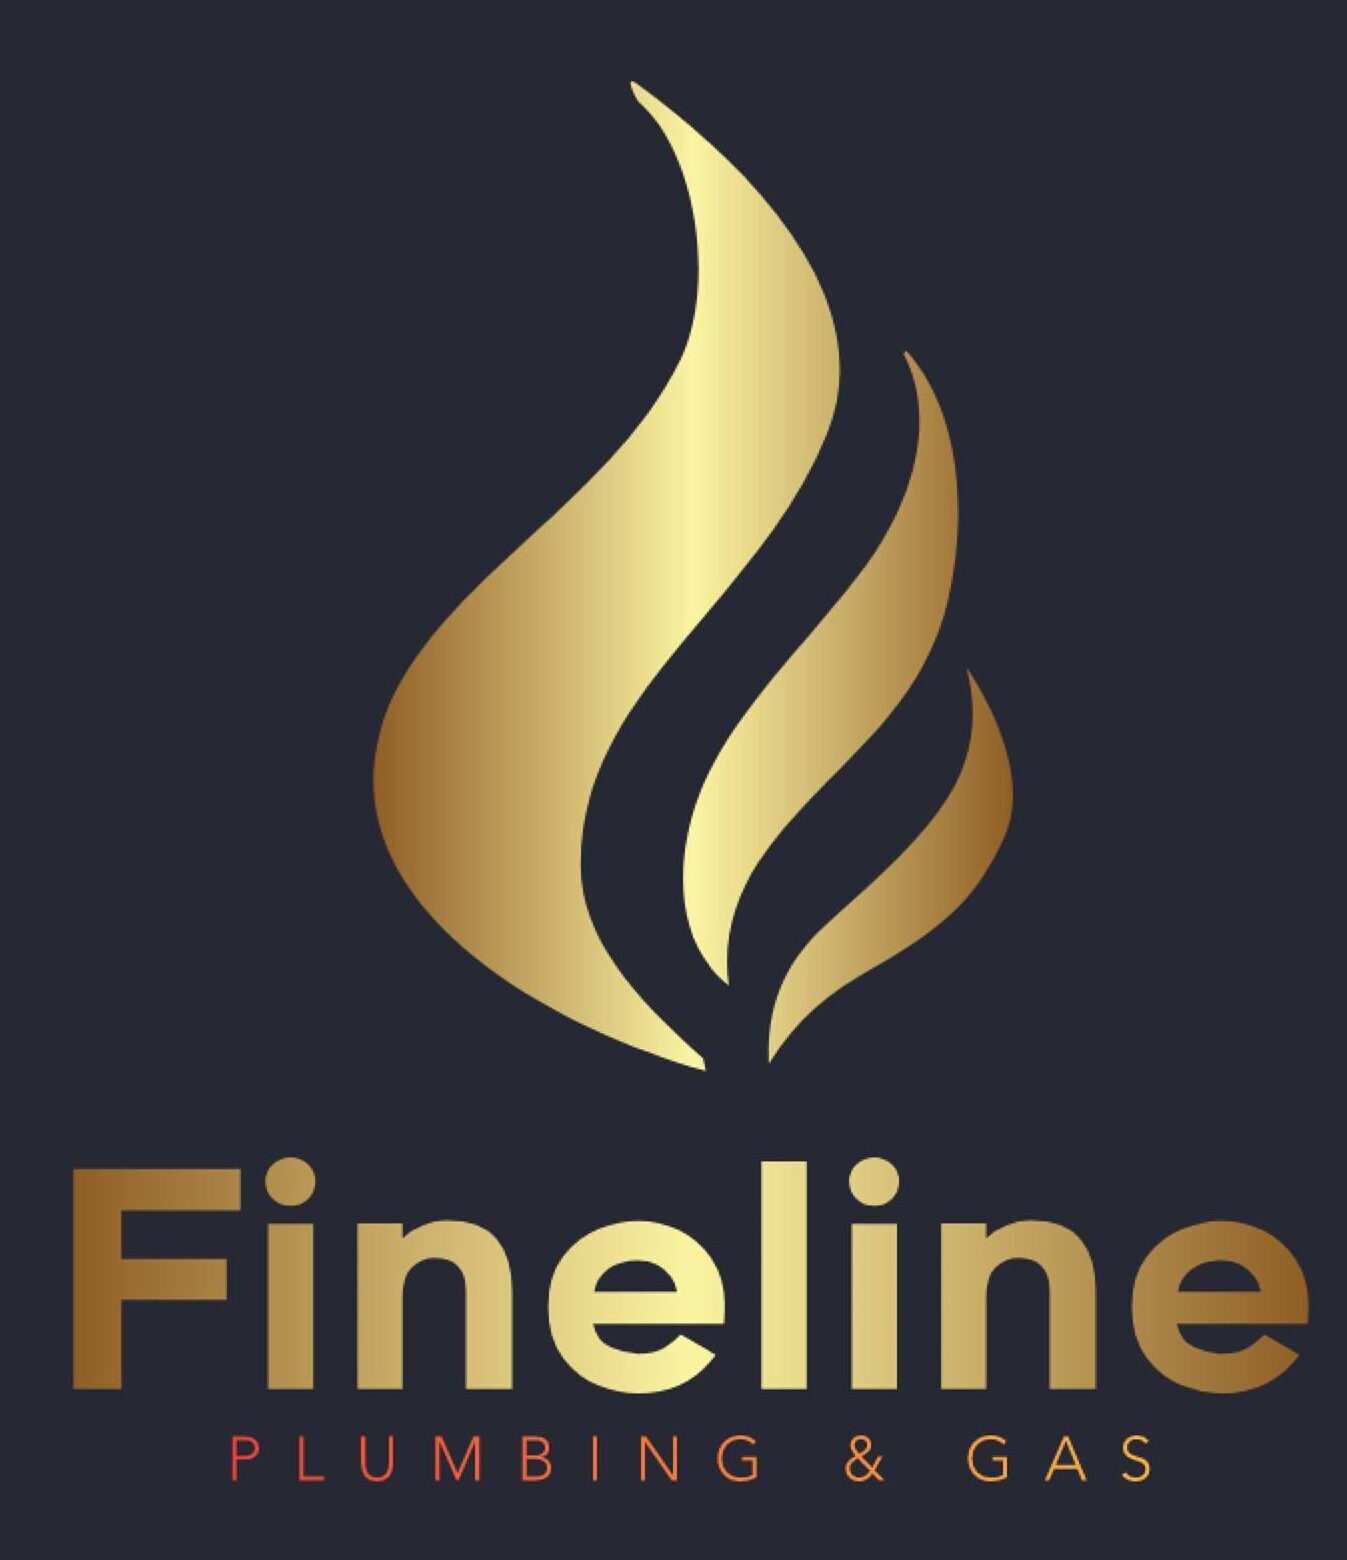 Fineline Plumbing